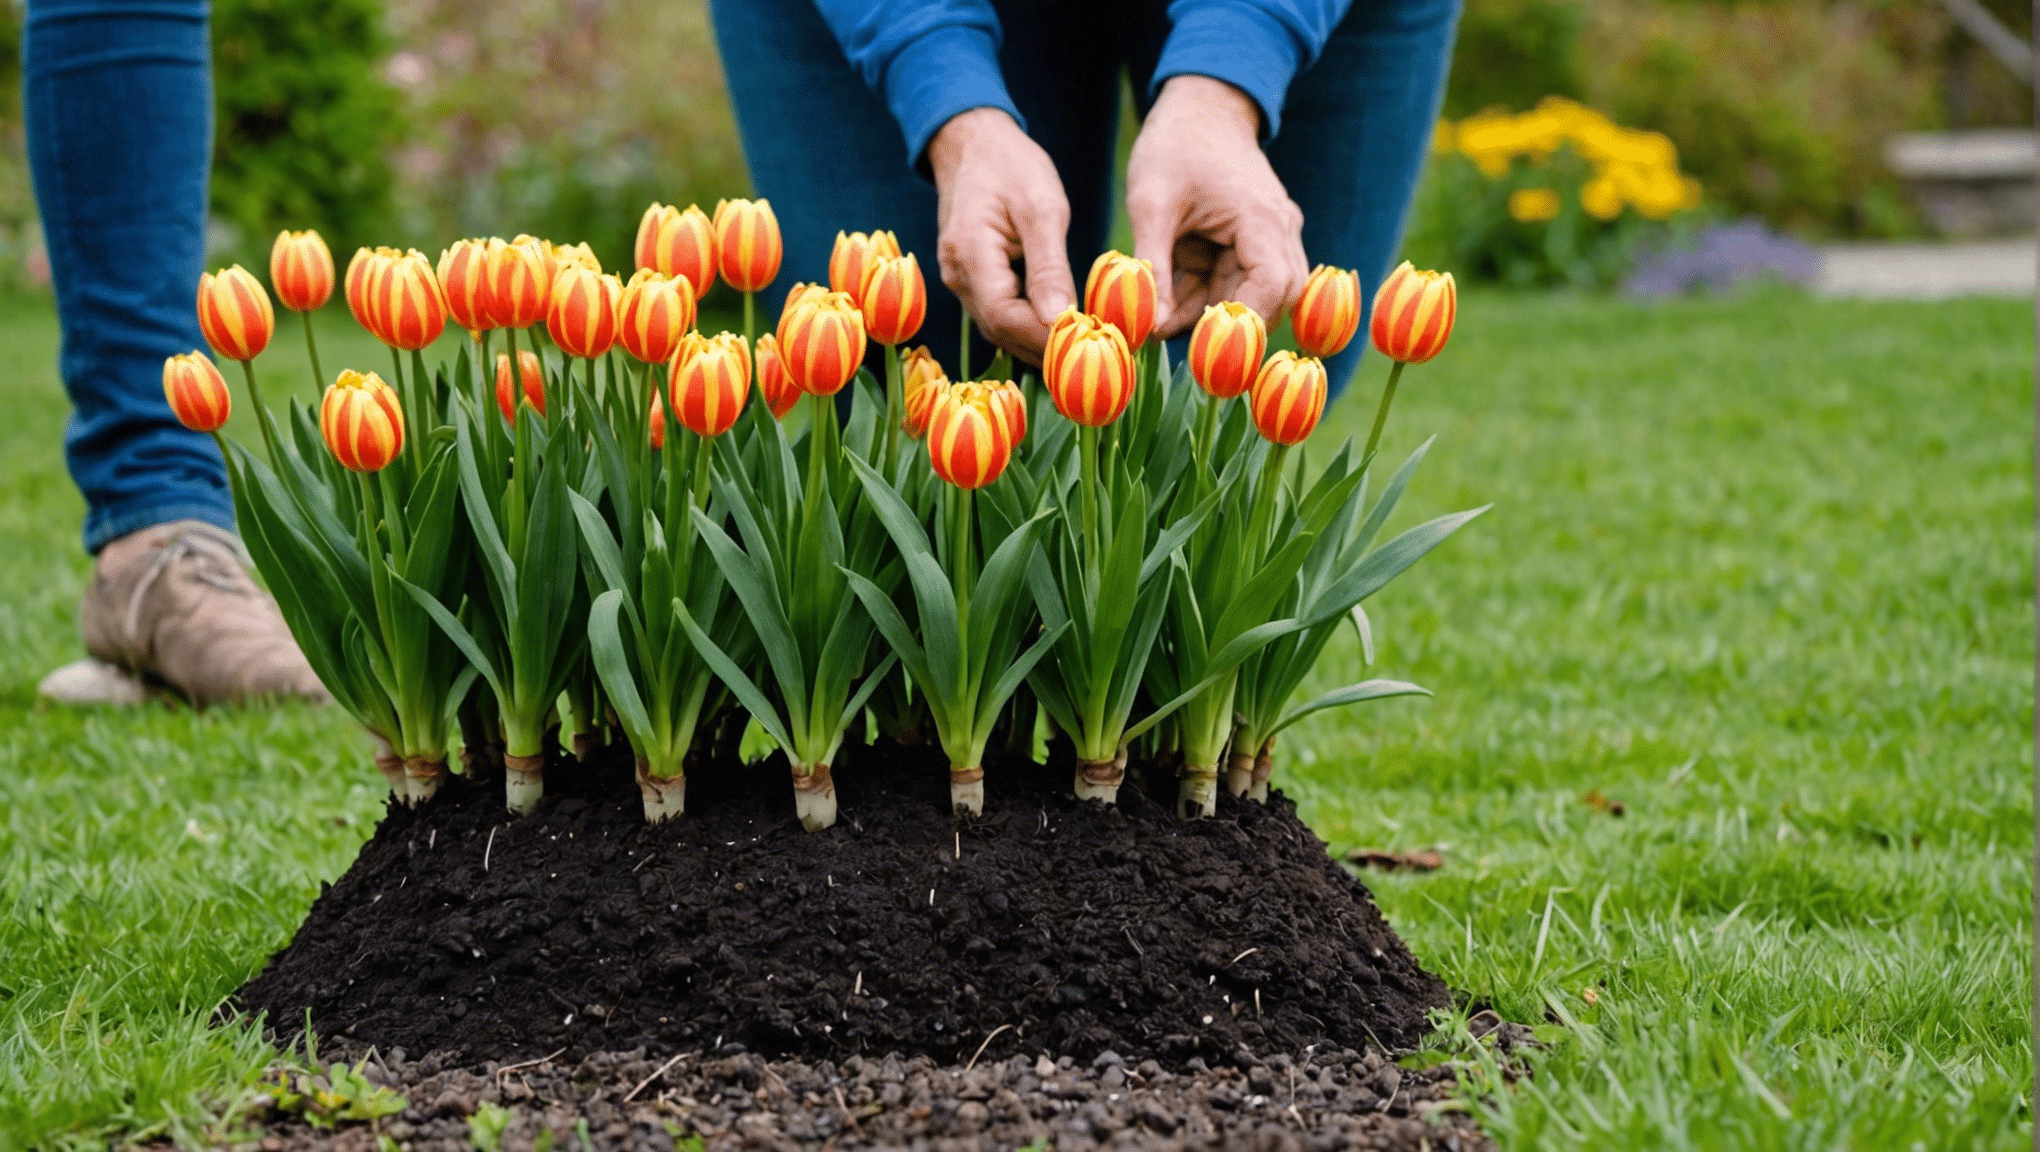 découvrez comment planter des bulbes pour obtenir un jardin éclatant au printemps avec nos conseils pratiques et faciles à suivre.